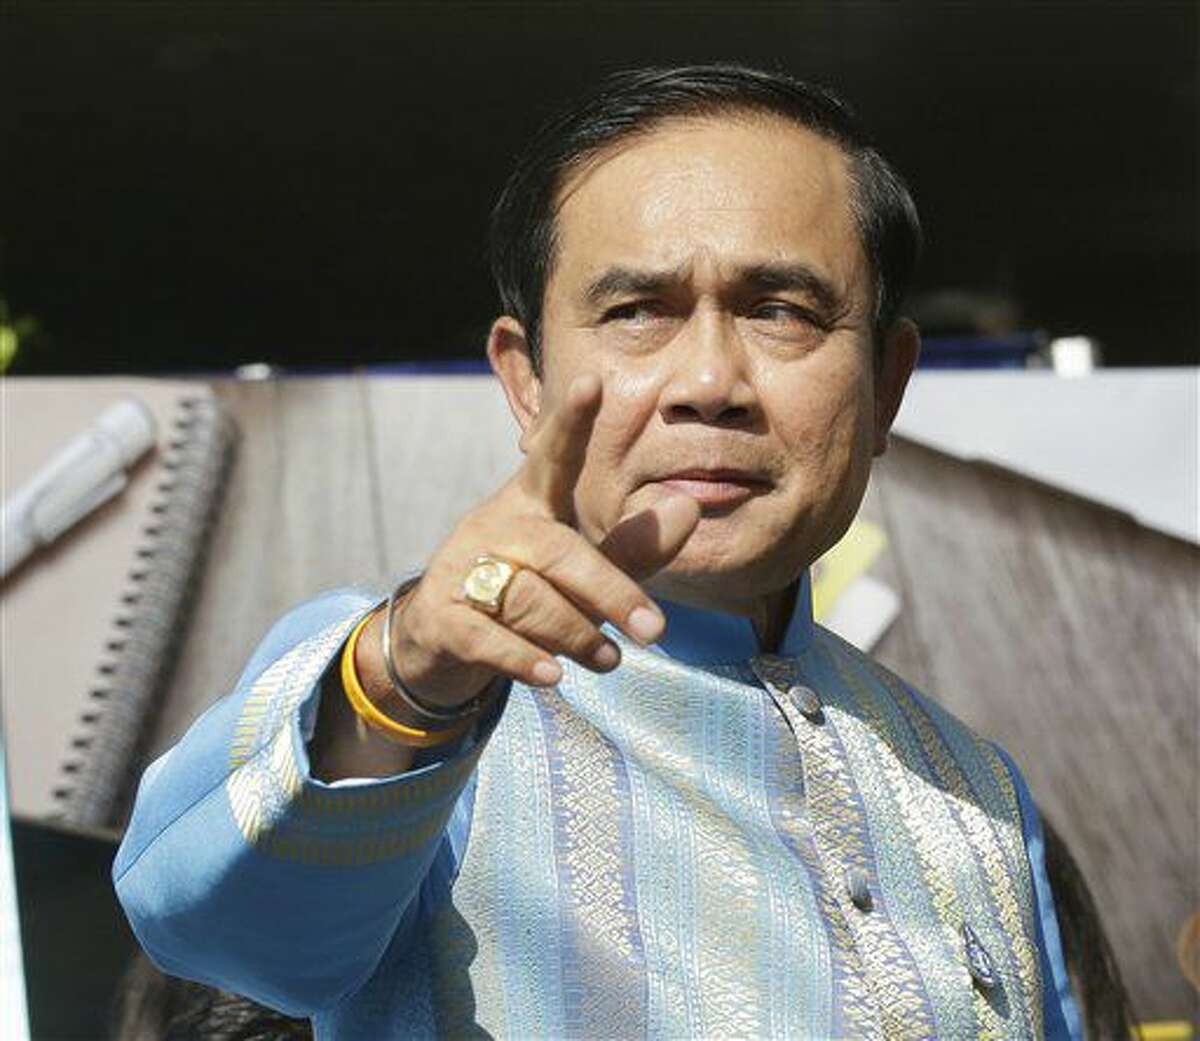 El primer ministro de Tailandia, Prayuth Chan-ocha, a su llegada al parlamento antes de una reunión de su gobierno, en Bangkok, Tailandia, el 9 de agosto de 2016. (AP Foto/Sakchai Lalit)